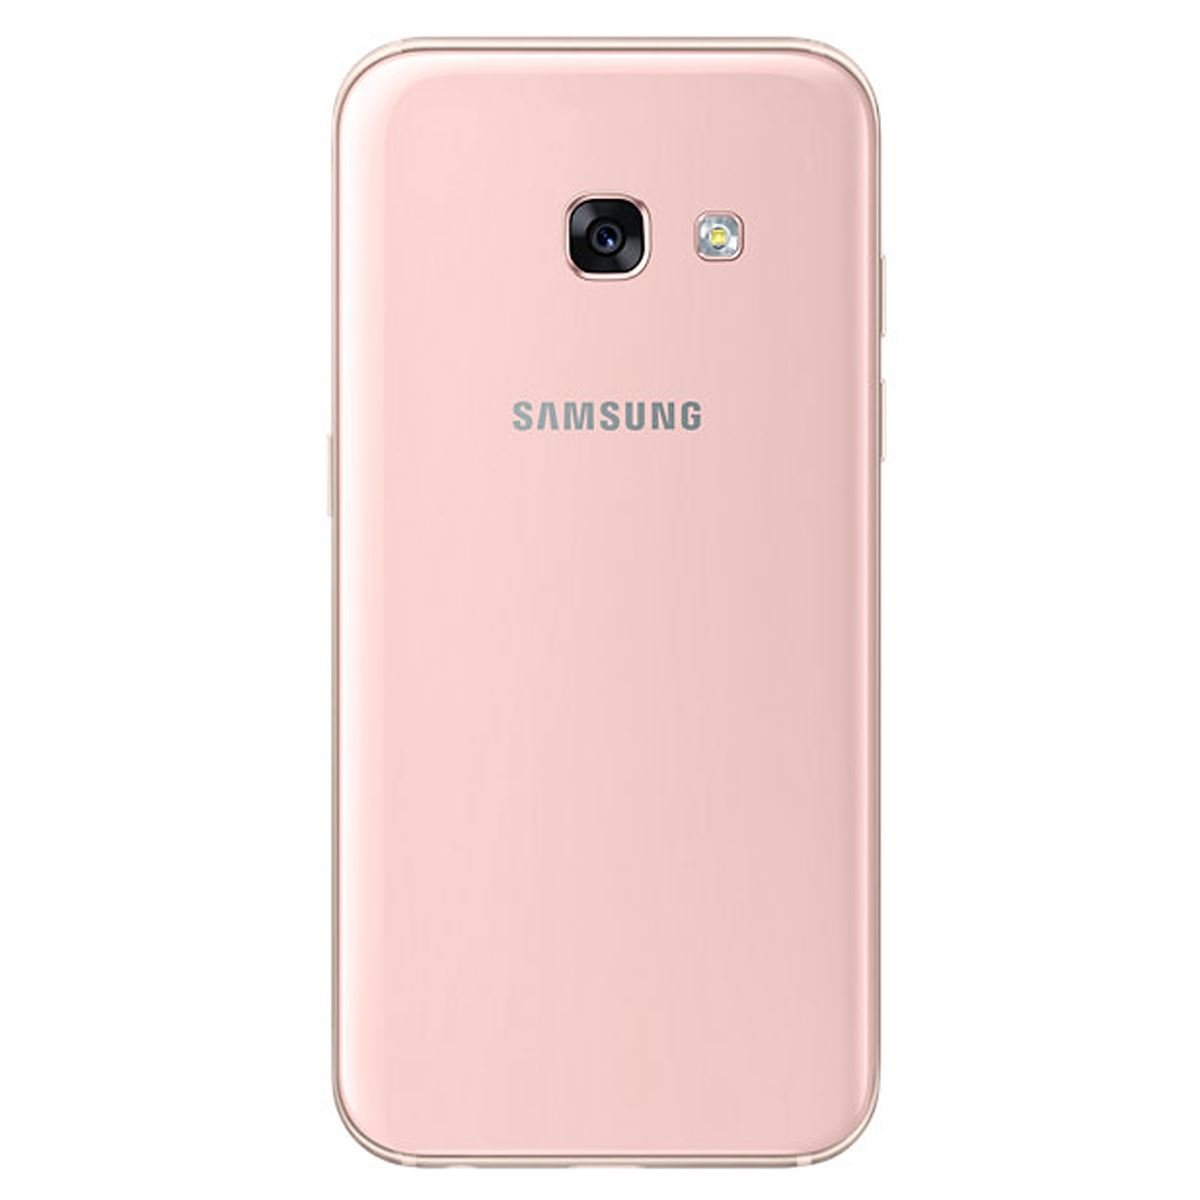 Celular Samsung SMA320Y Galaxy A3 Color Durazno R9 (Telcel)